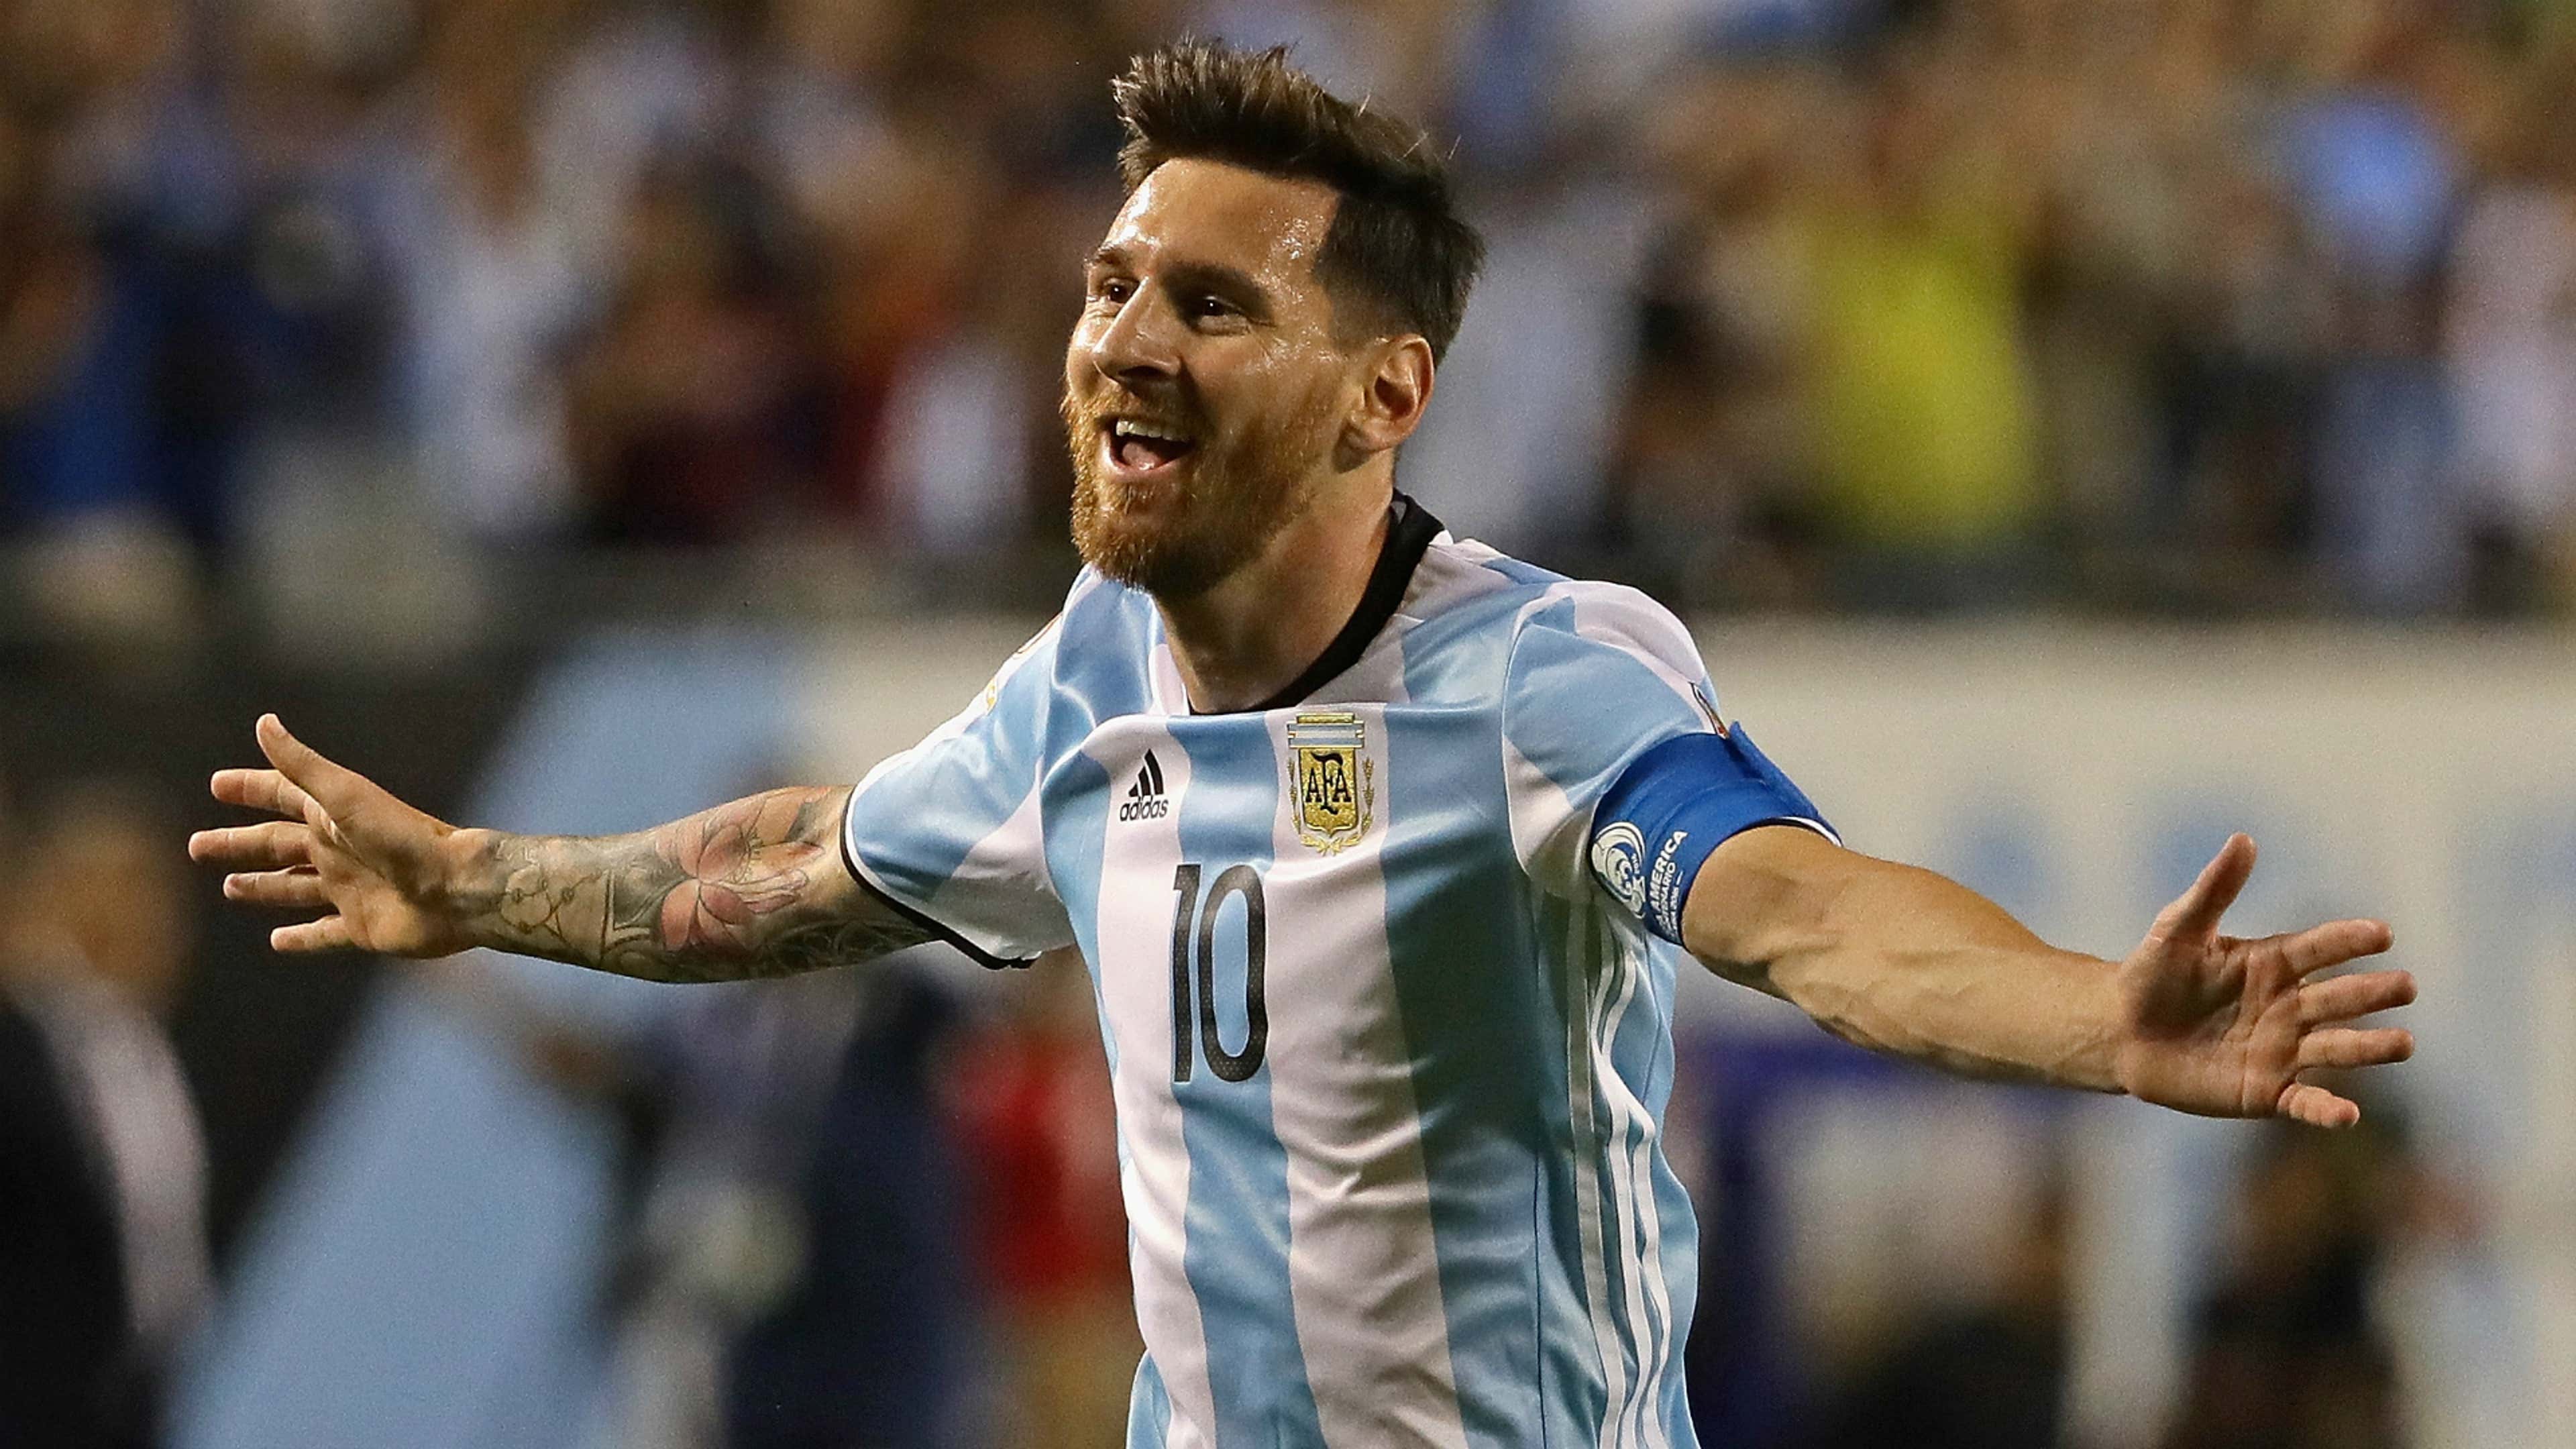 Ecuador 1 Argentina 3: Messi hat-trick seals victory